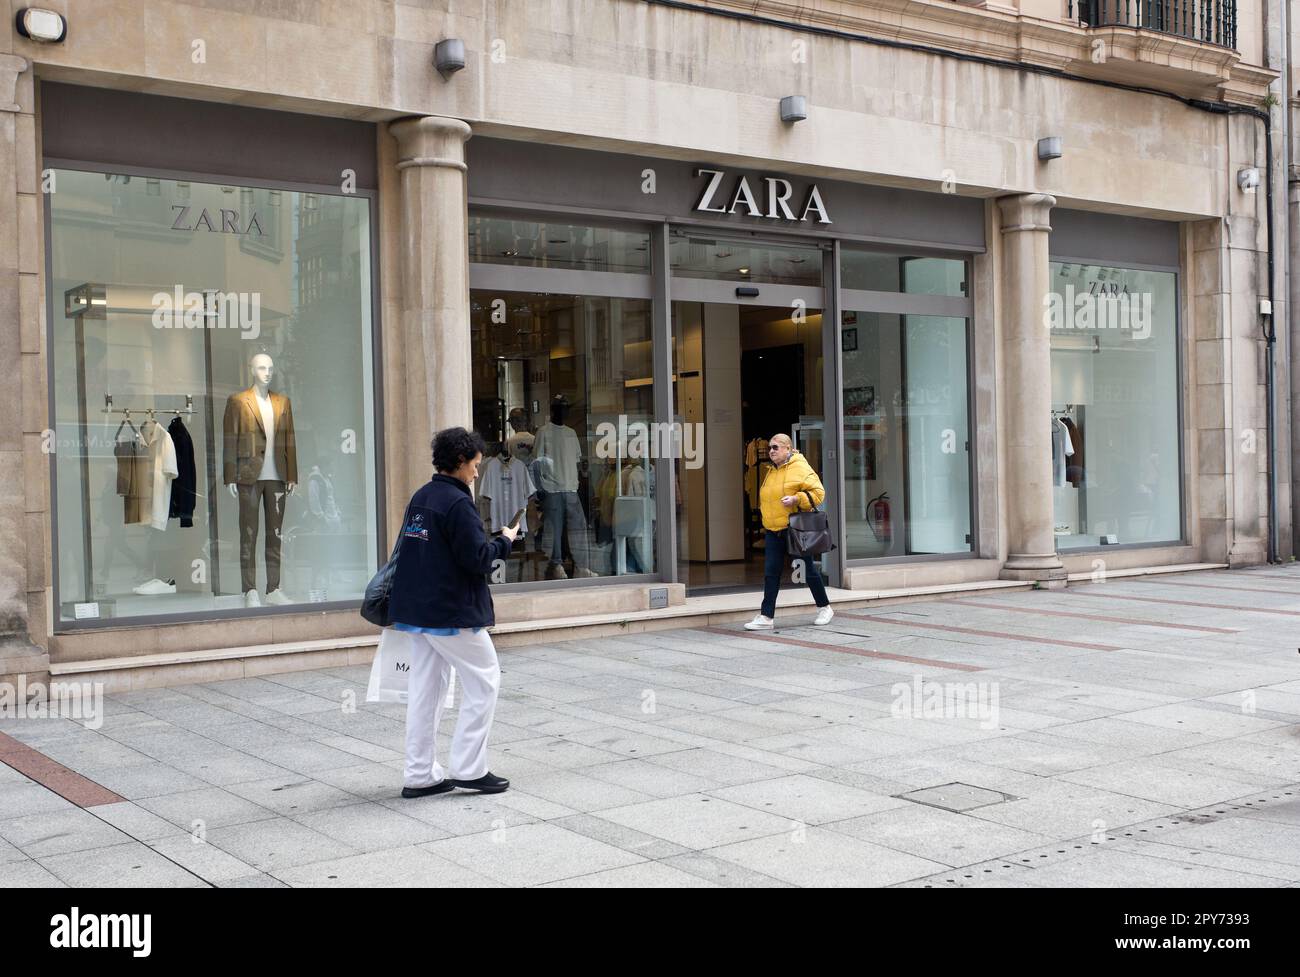 Zara ist eine spanische Modekette aus Arteijo (La Coruña), Spanien, gegründet von Amancio Ortega und Rosalía Mera. Gijon, Asturien, Spanien Stockfoto